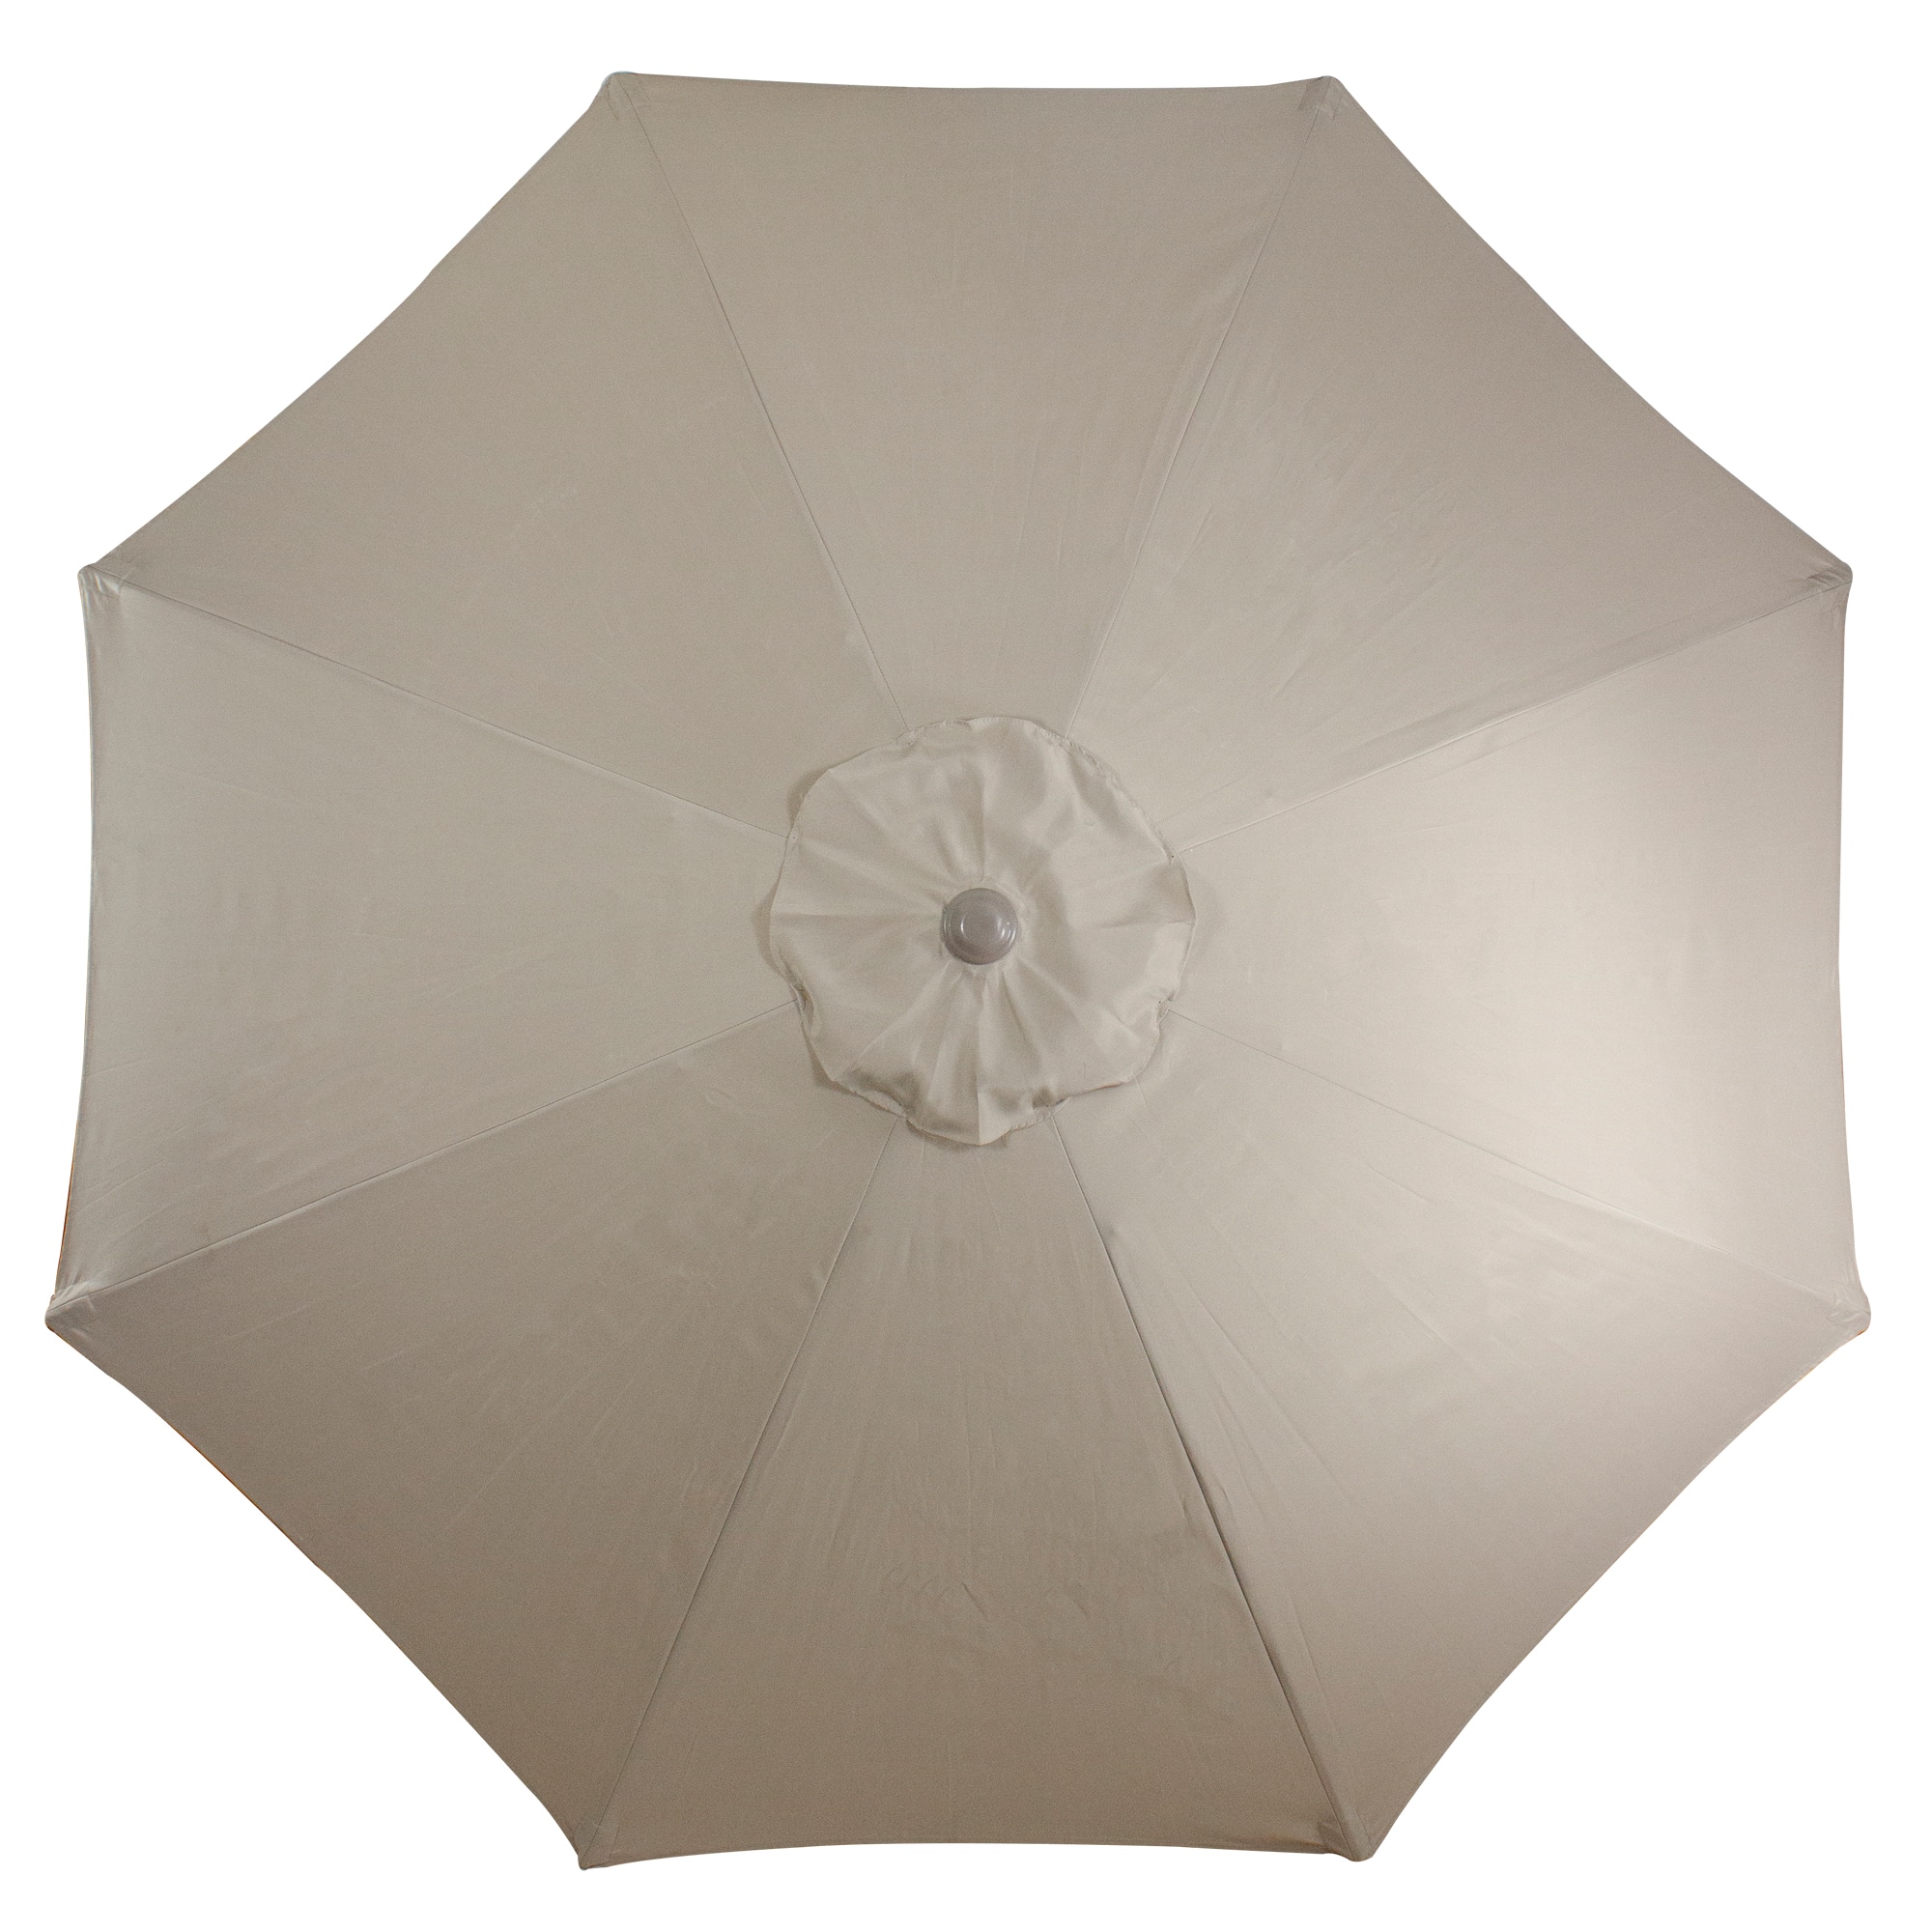 9ft. Outdoor Patio Market Umbrella with Hand Crank &#x26; Tilt